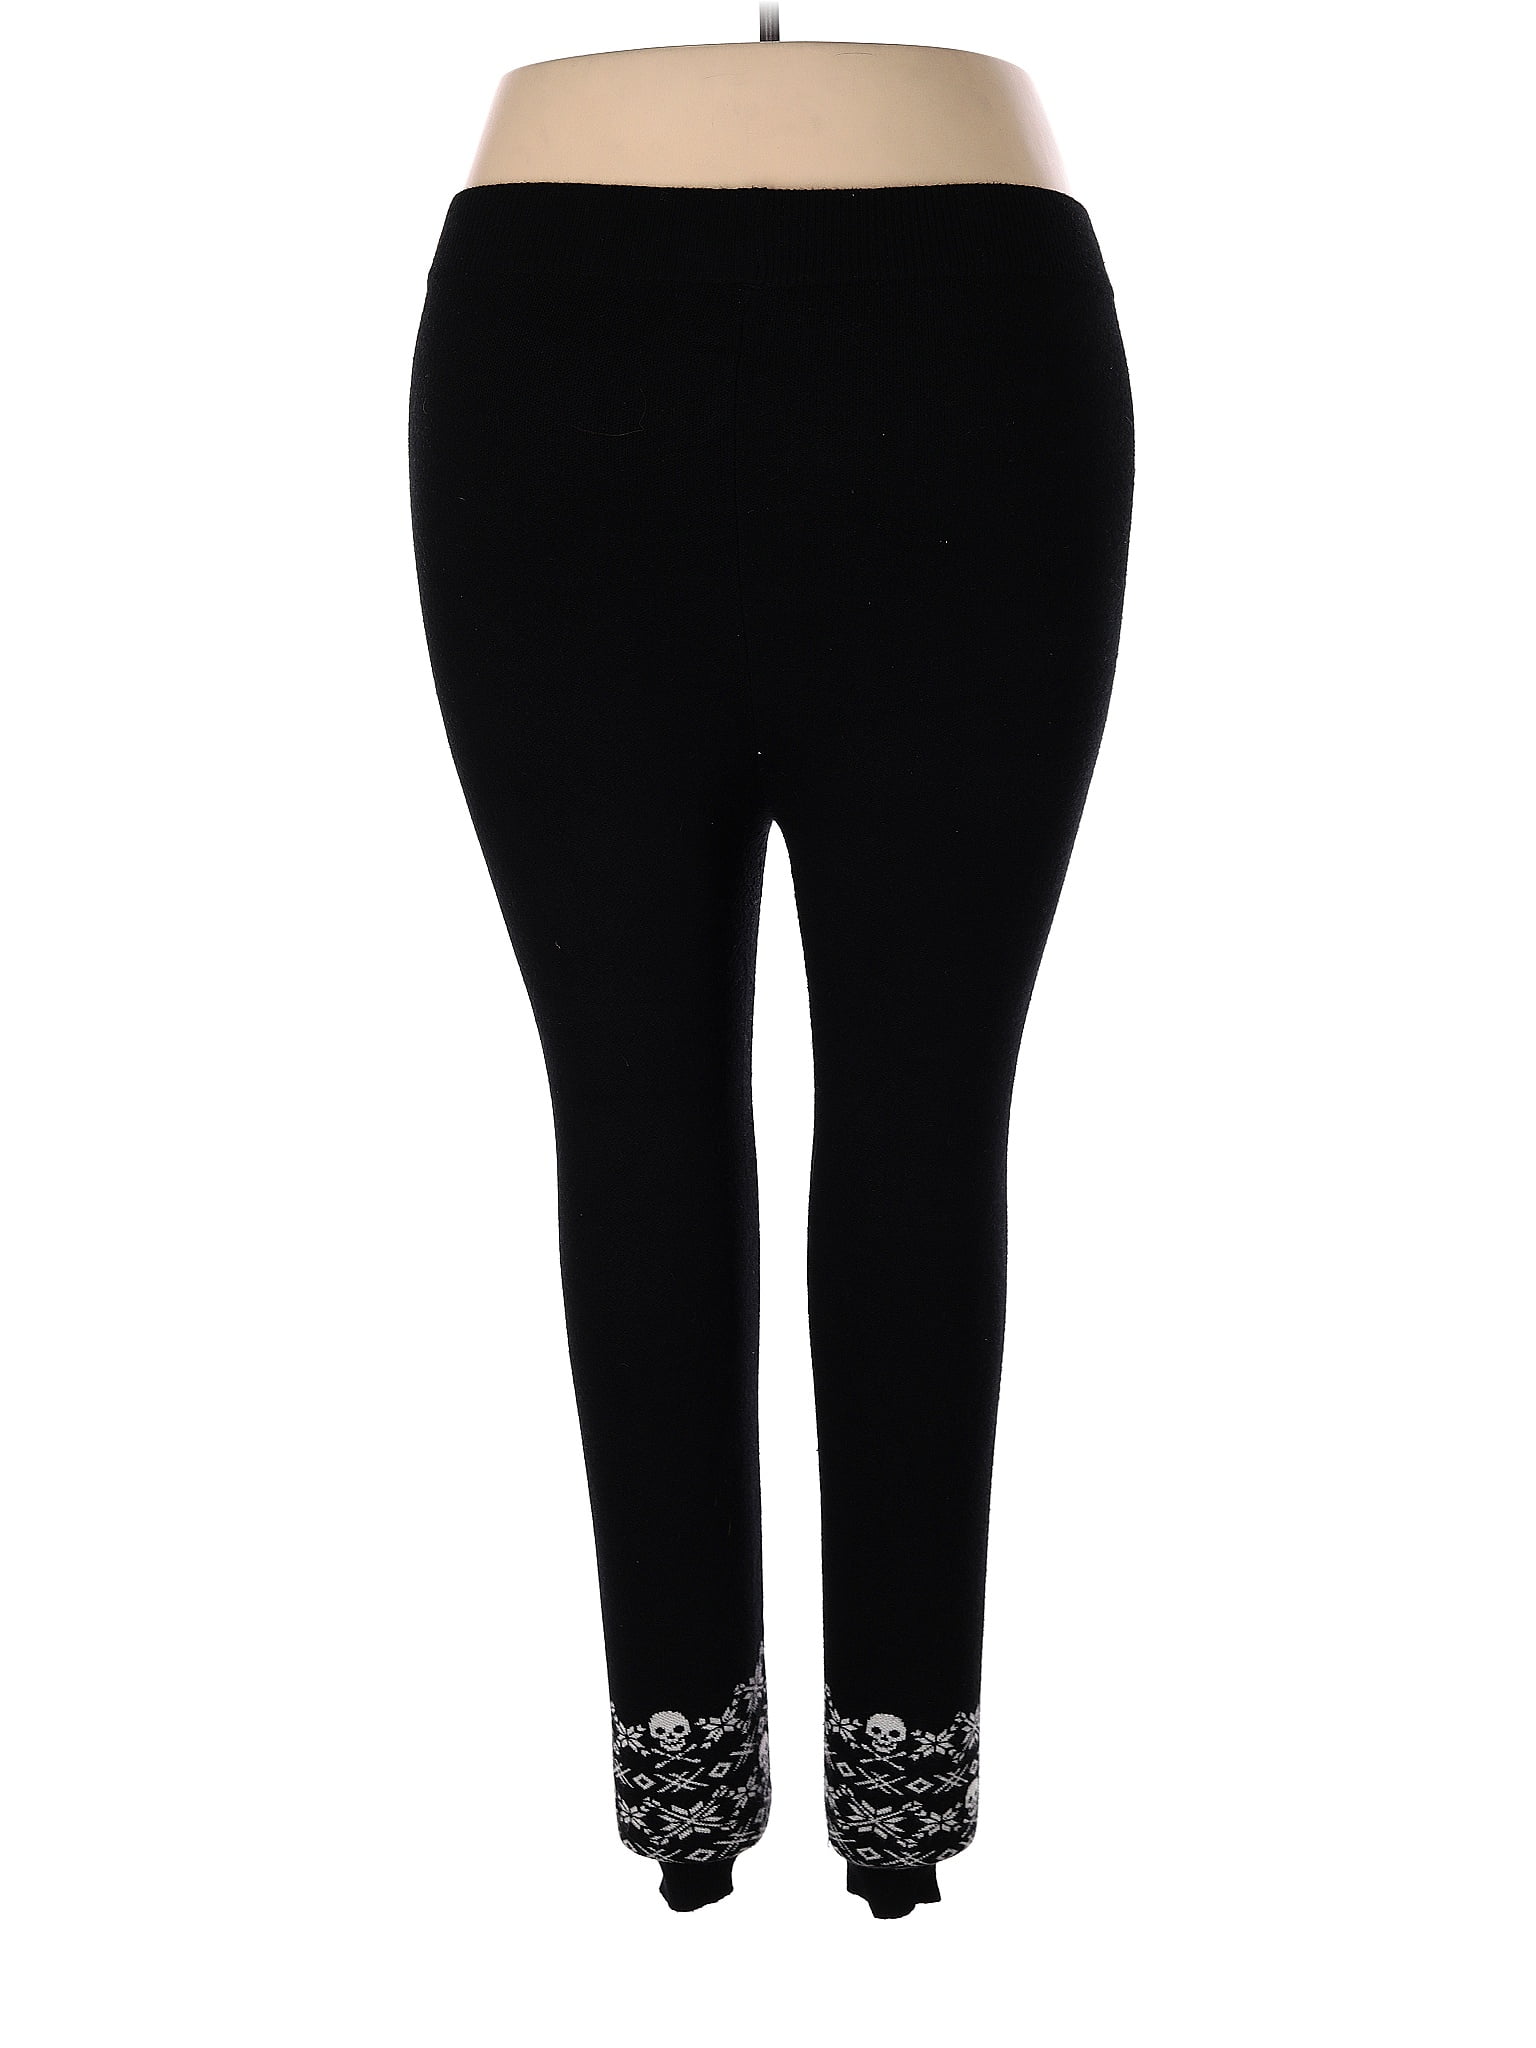 Torrid Black Active Pants Size 2X Plus (2) (Plus) - 56% off